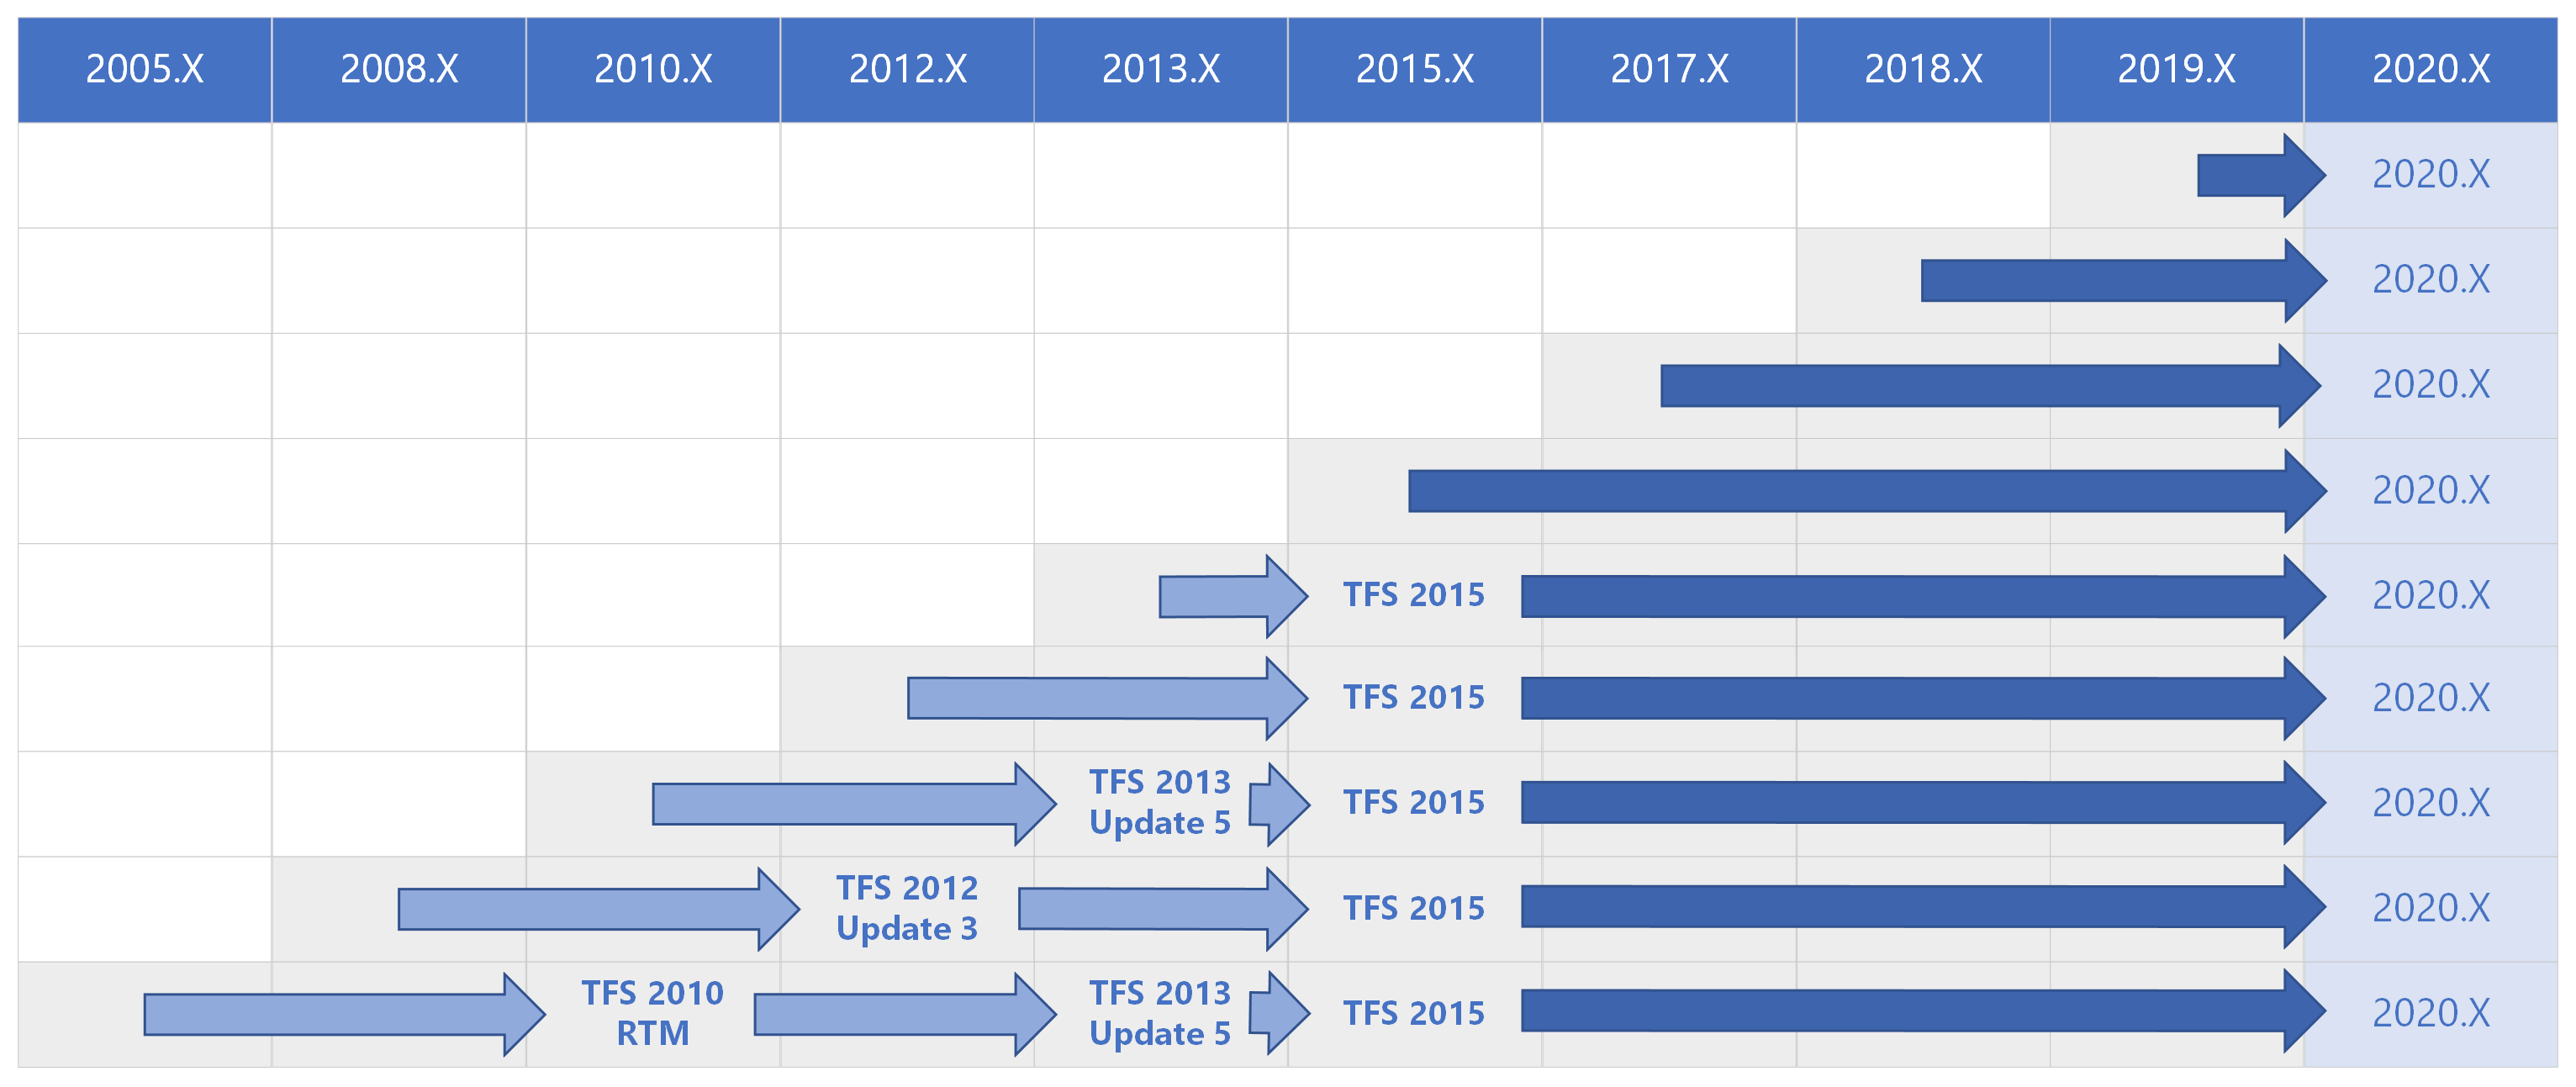 Upgradepfadmatrix für Azure DevOps 2020 für alle früheren Versionen.